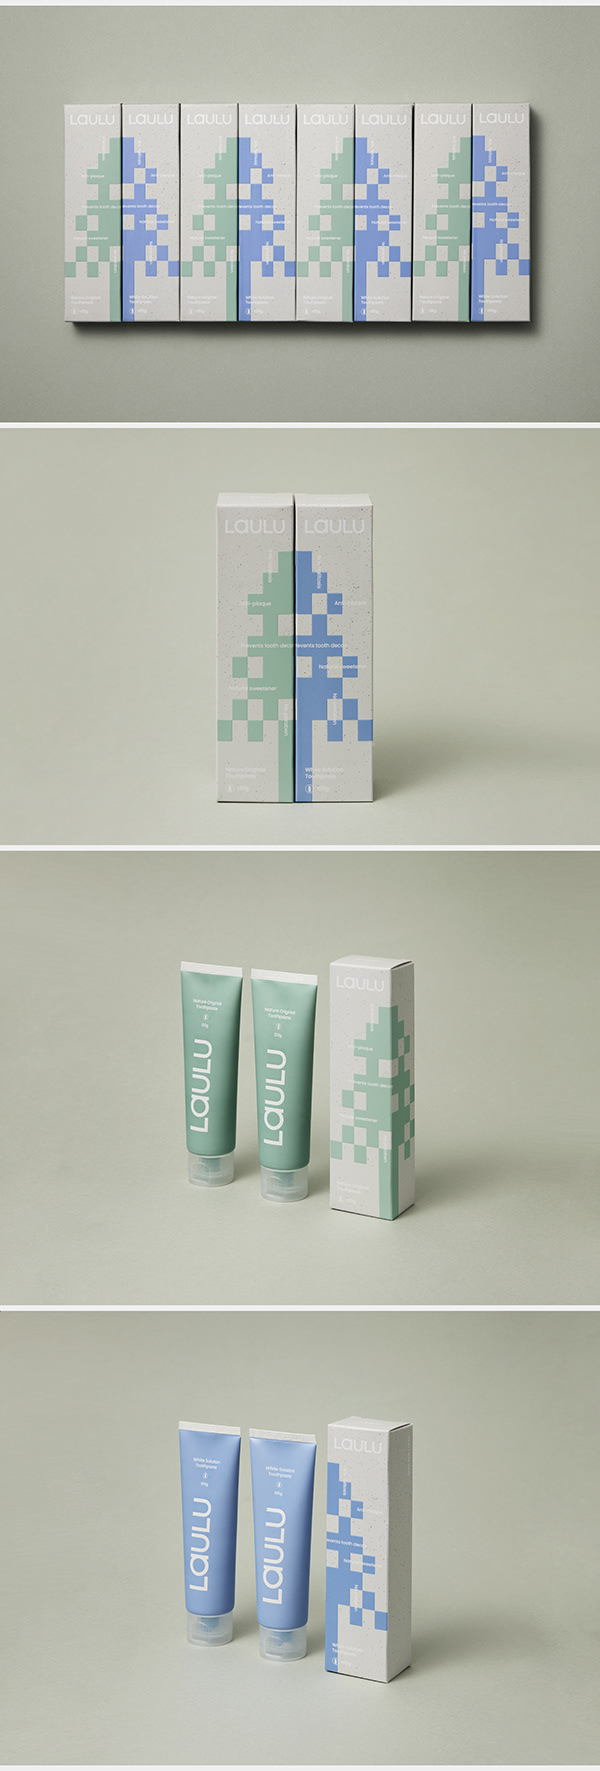 LAULU Brand Renewal & Packaging